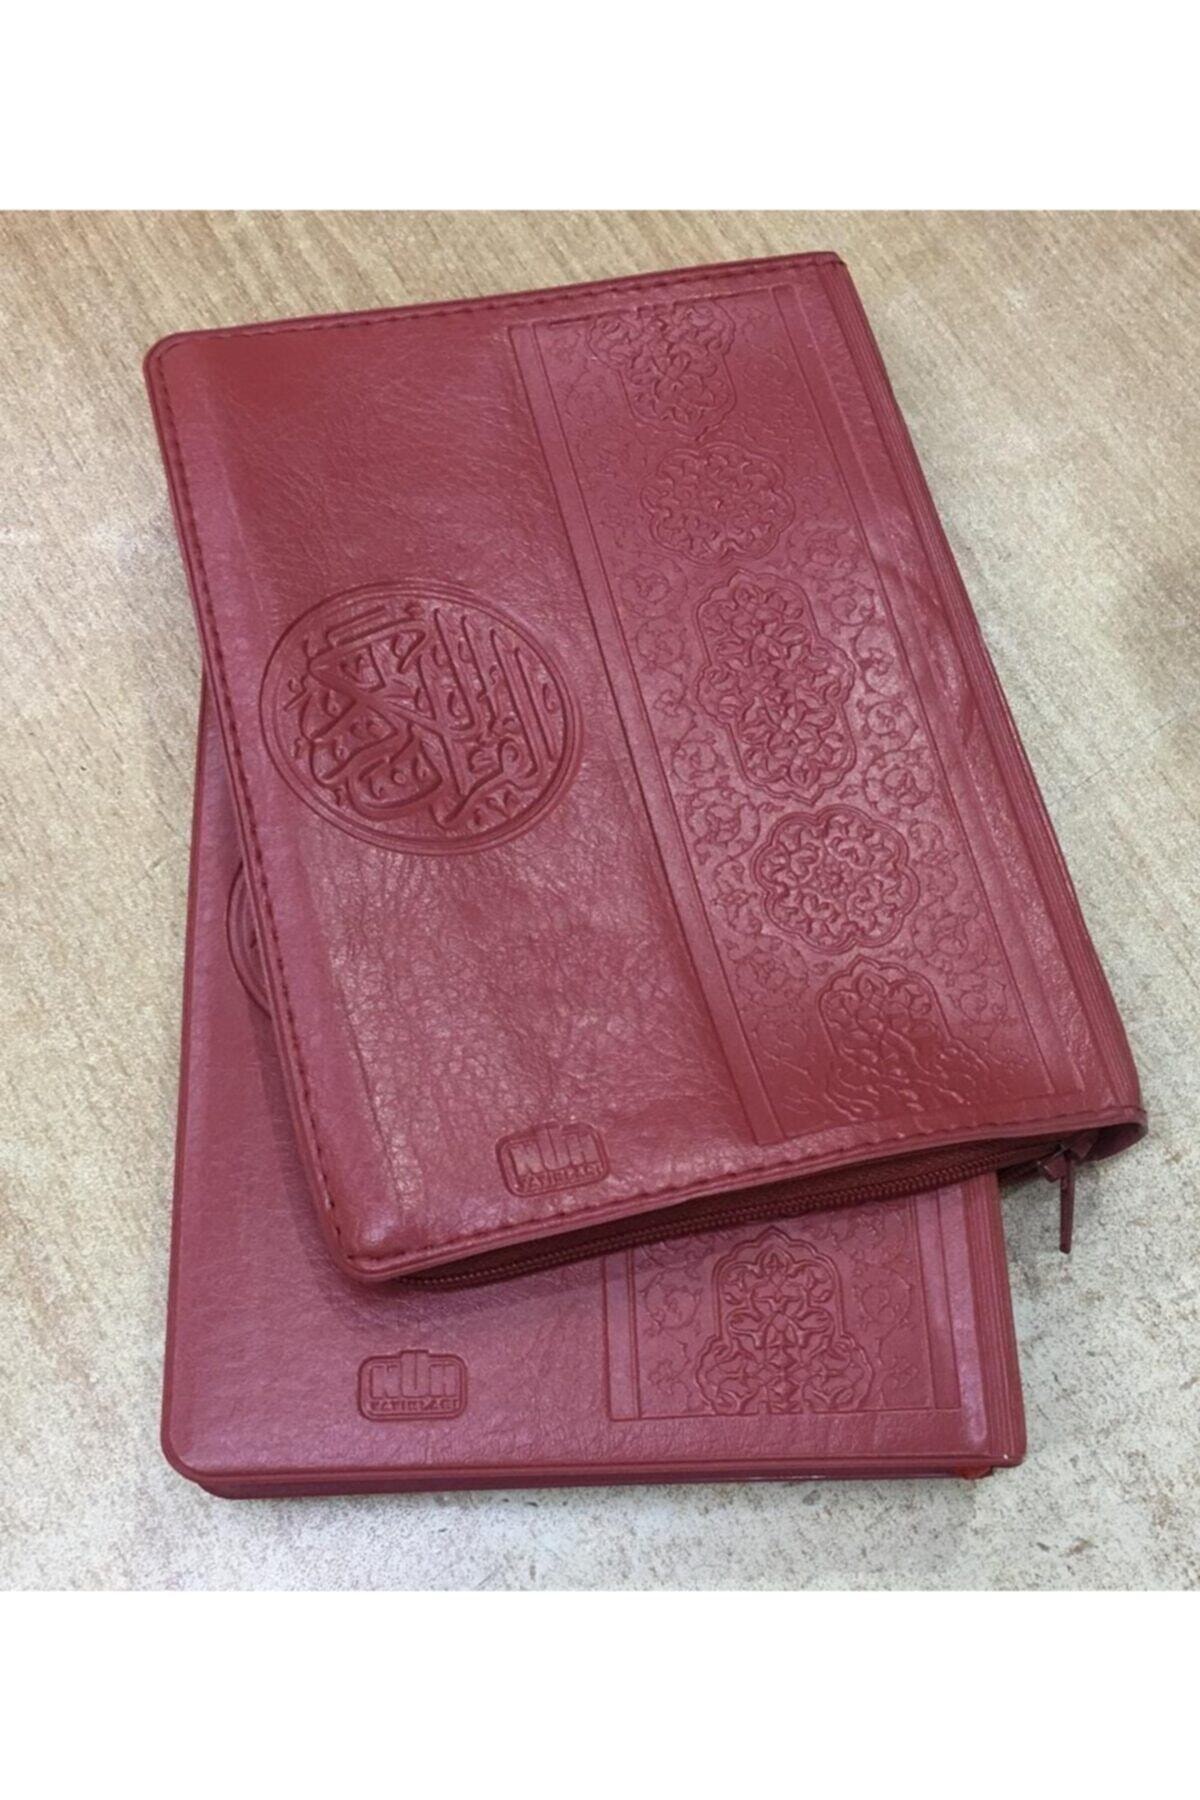 Nuh Yayıncılık Kuranı Kerim, 13x18 Cm. Çanta Boy, Fermuarlı Kılıflı, Nuh Yay